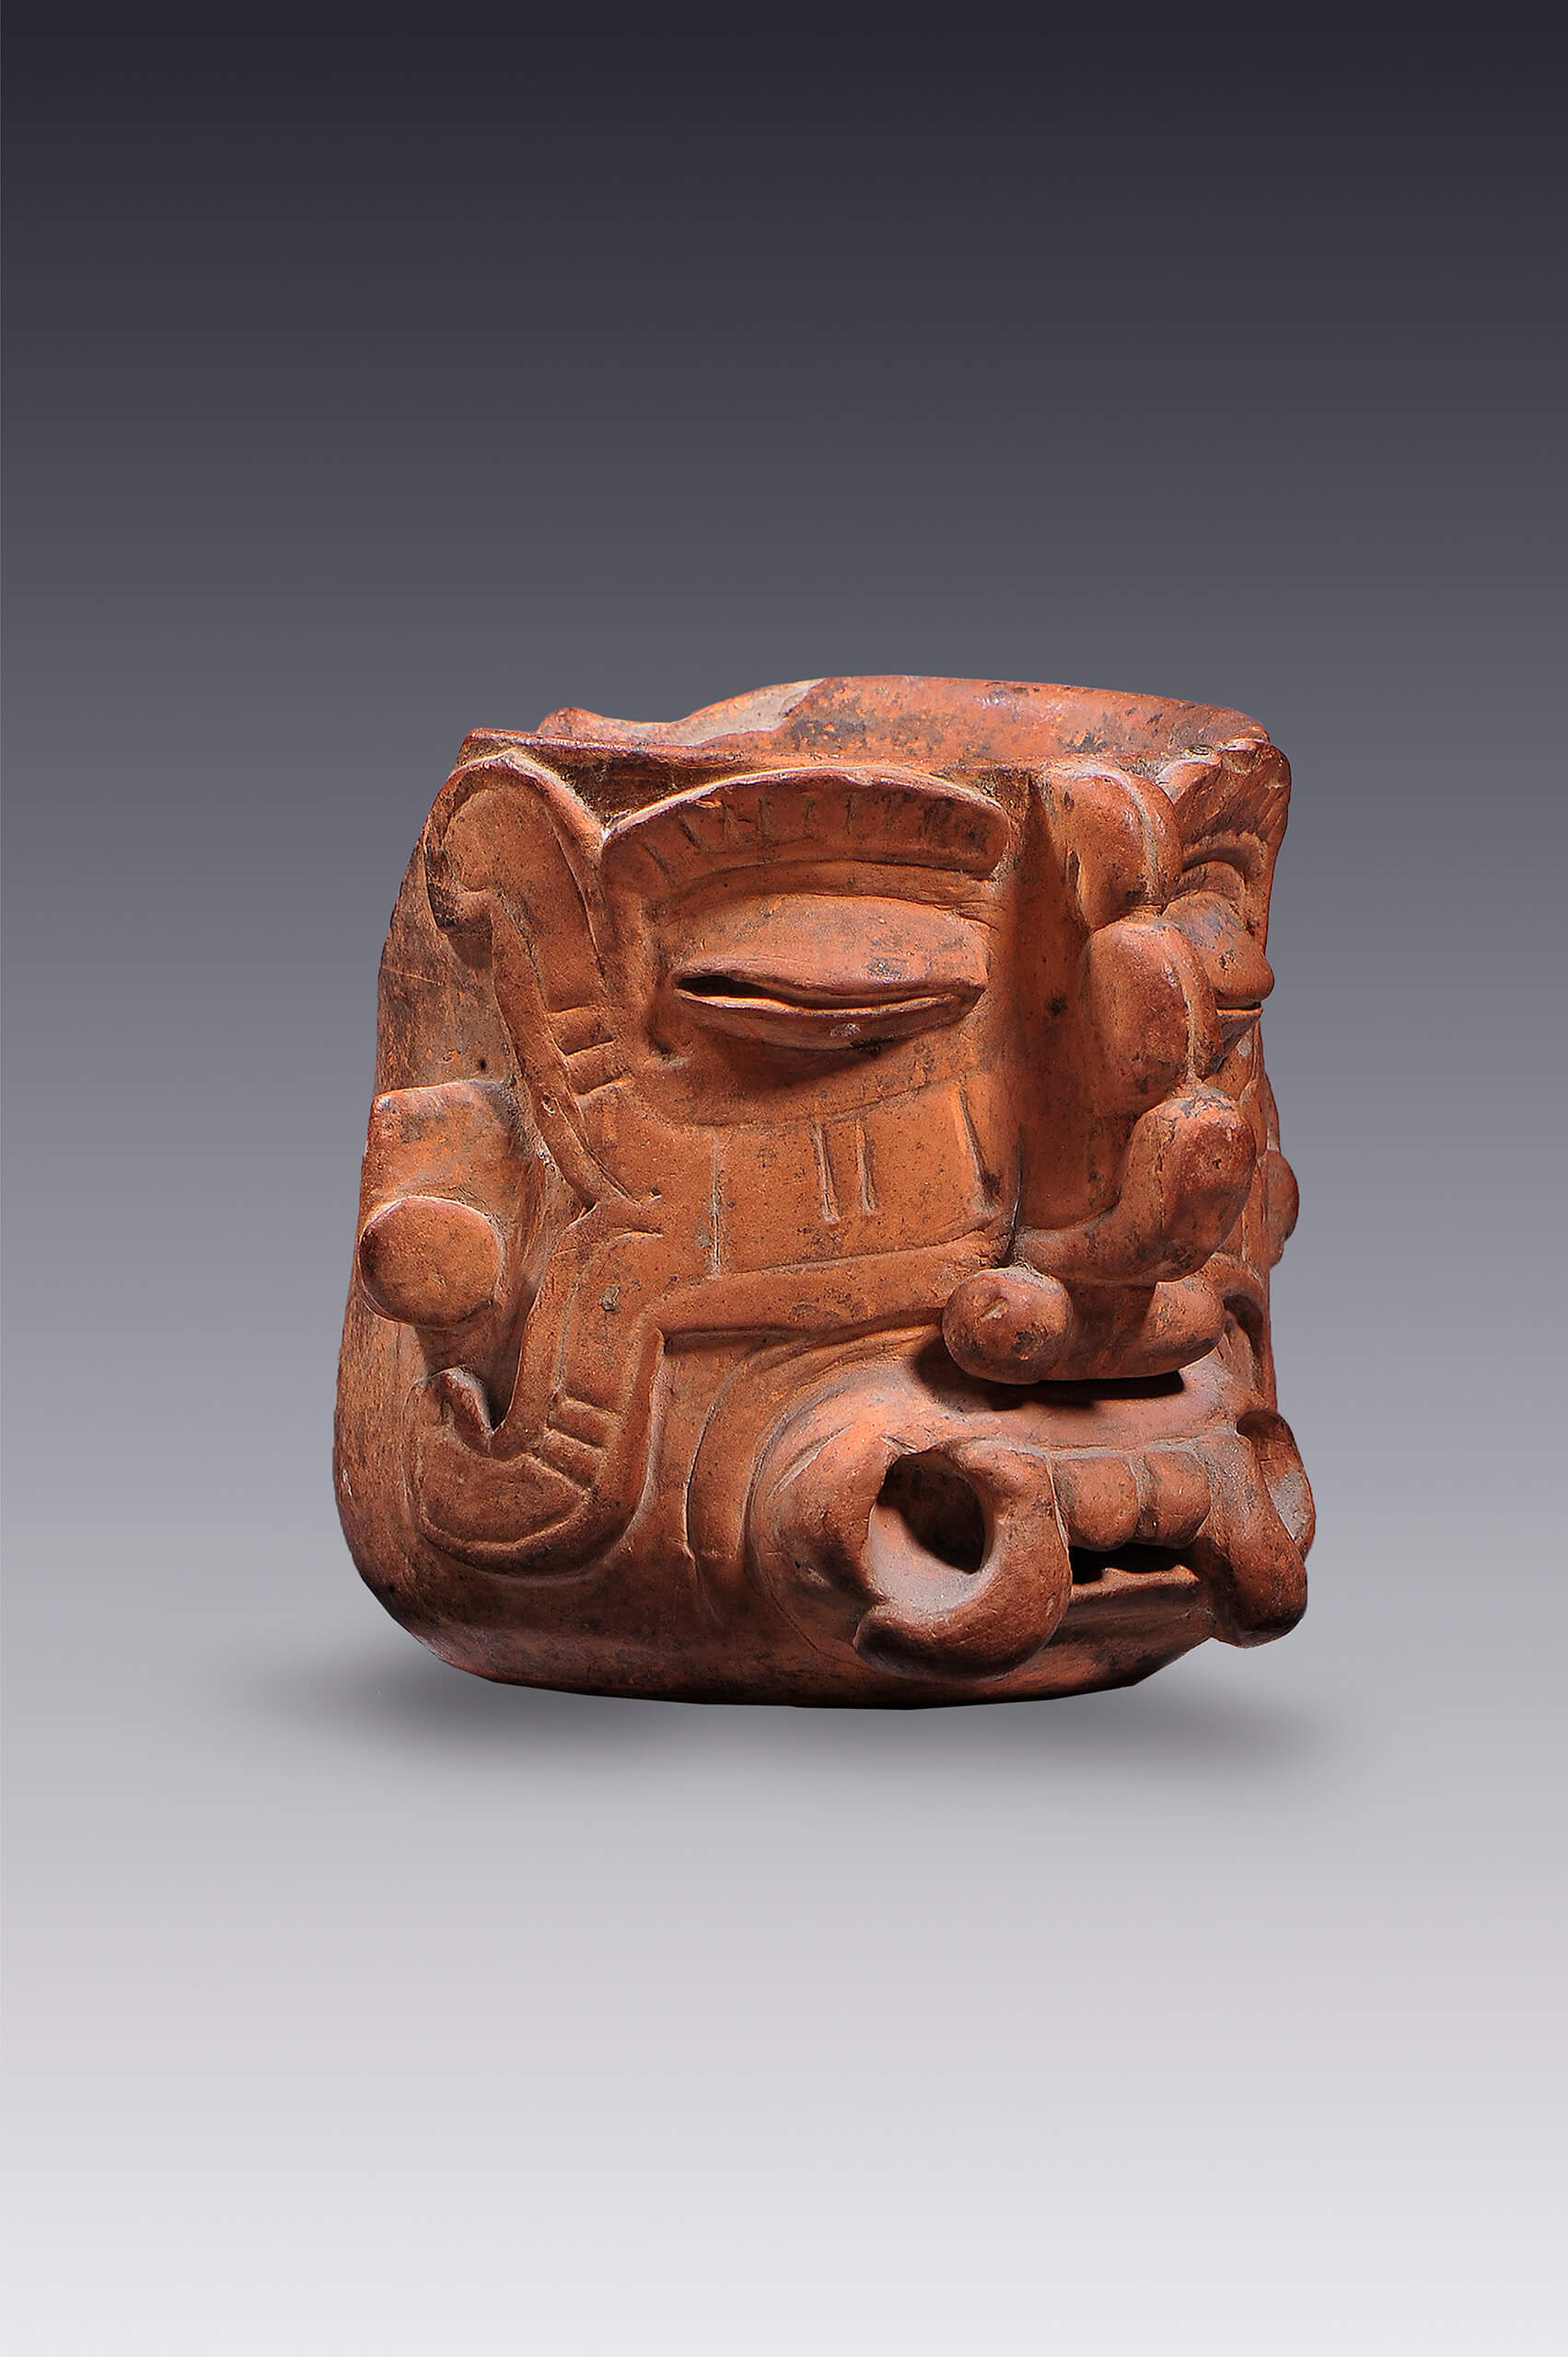 Vaso-efigie con representación de Tláloc, ¿Cocijo? | El tiempo en las cosas. Salas de Arte Contemporáneo | Museo Amparo, Puebla